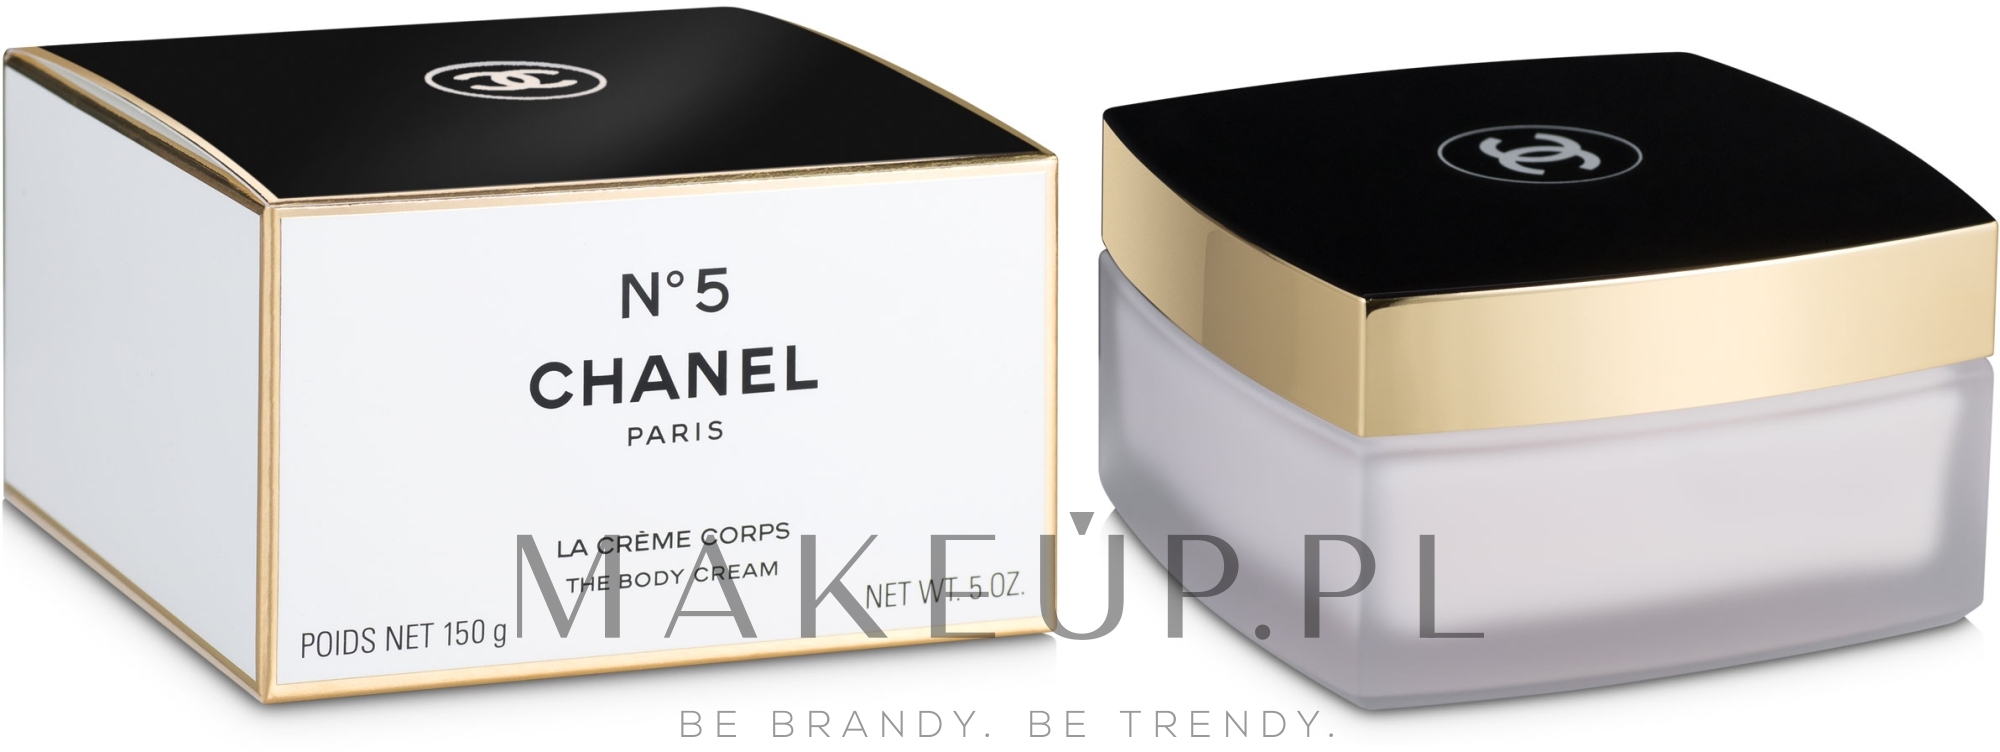 Chanel N°5 - Perfumowany krem do ciała — Zdjęcie 150 g